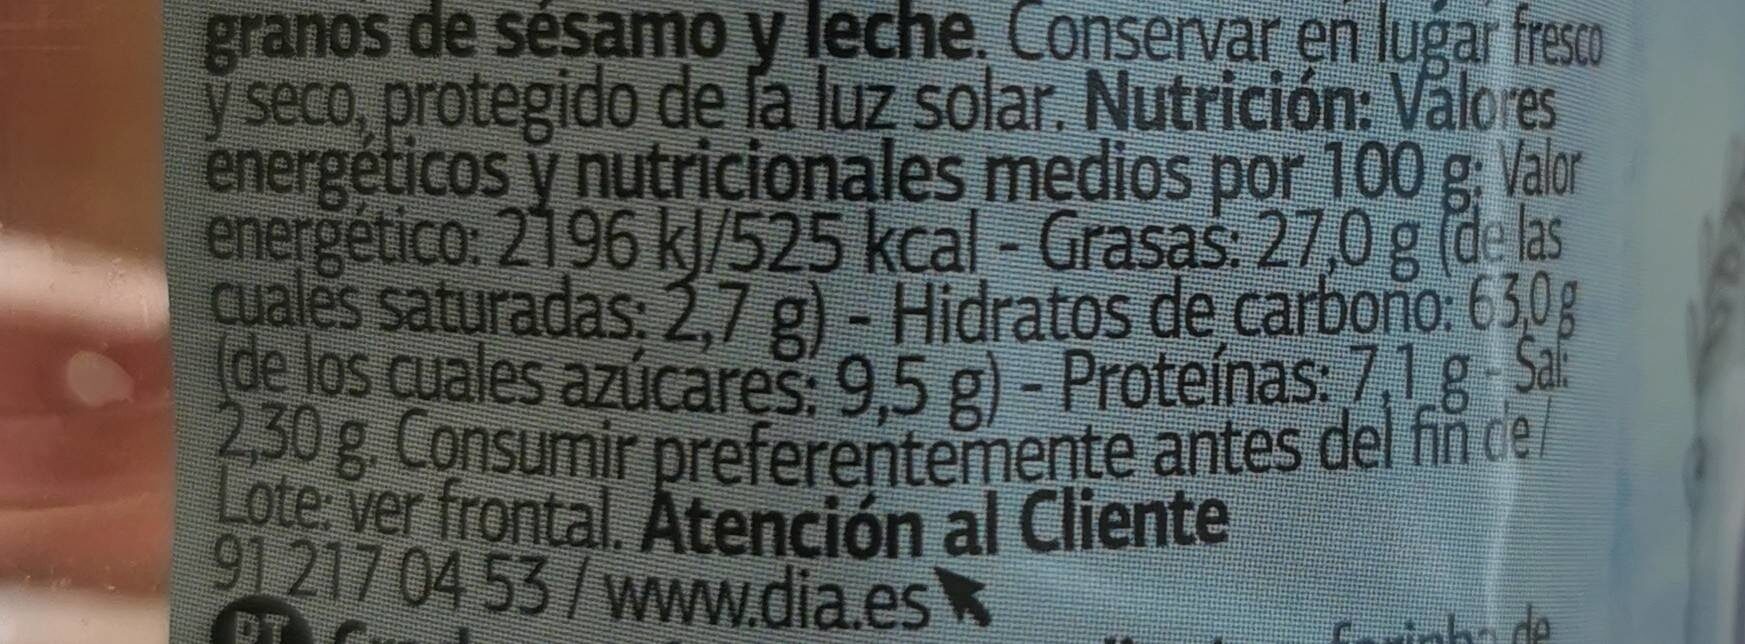 Mini galletas saladas crackers - Nutrition facts - es